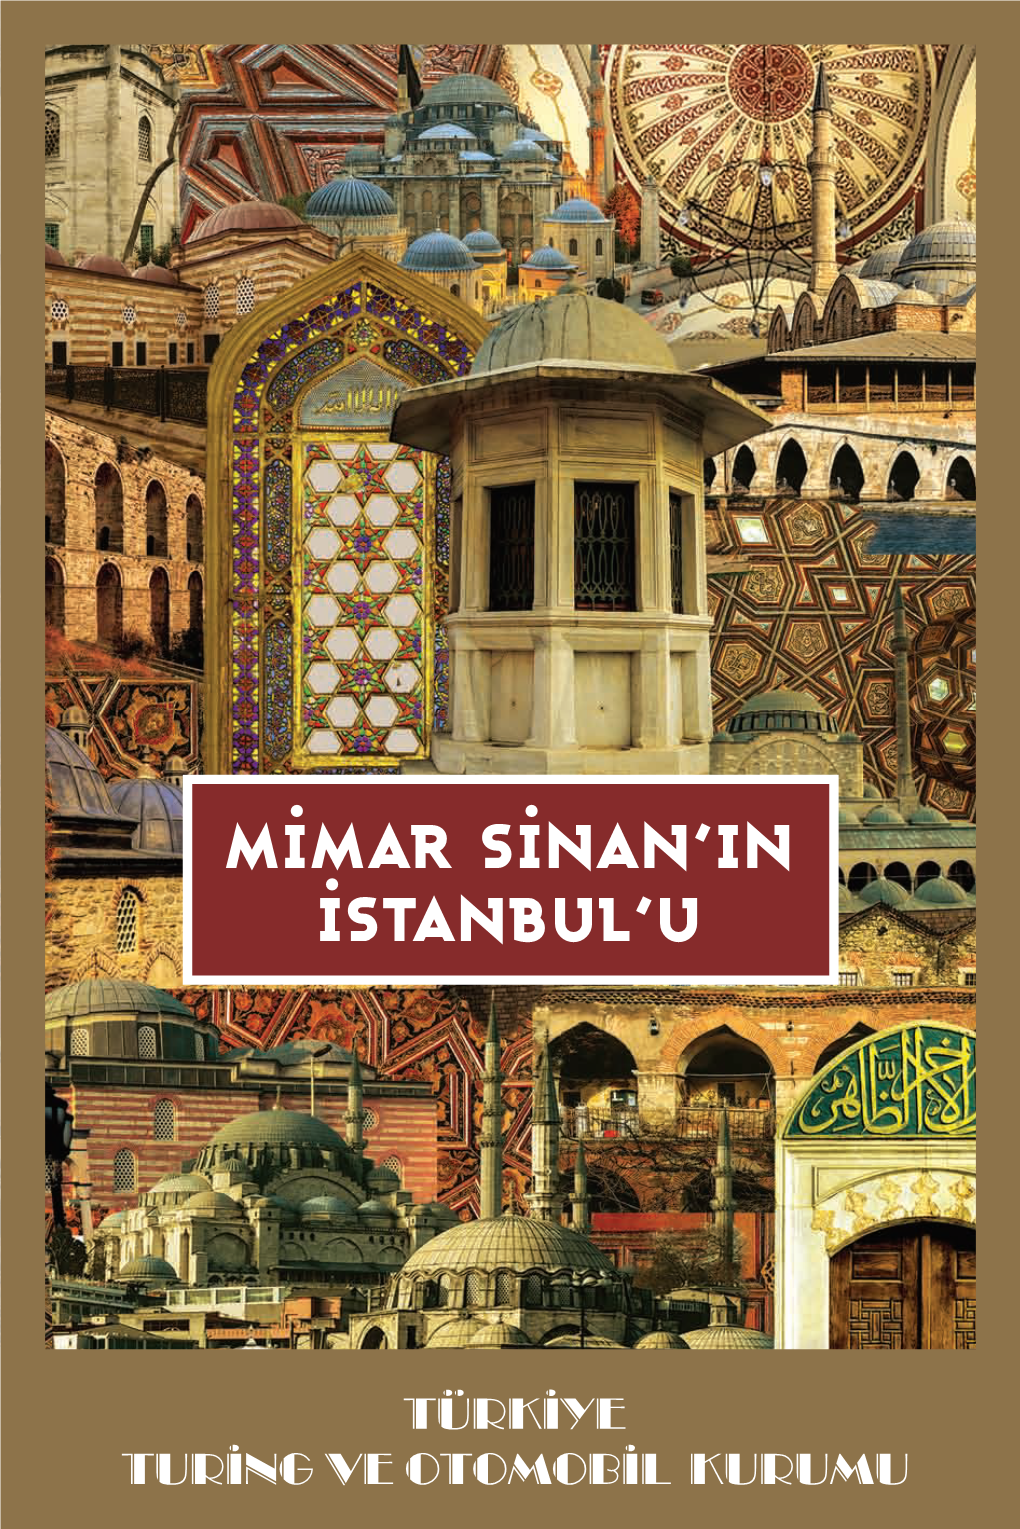 Mimar Sinan'in Istanbul'u